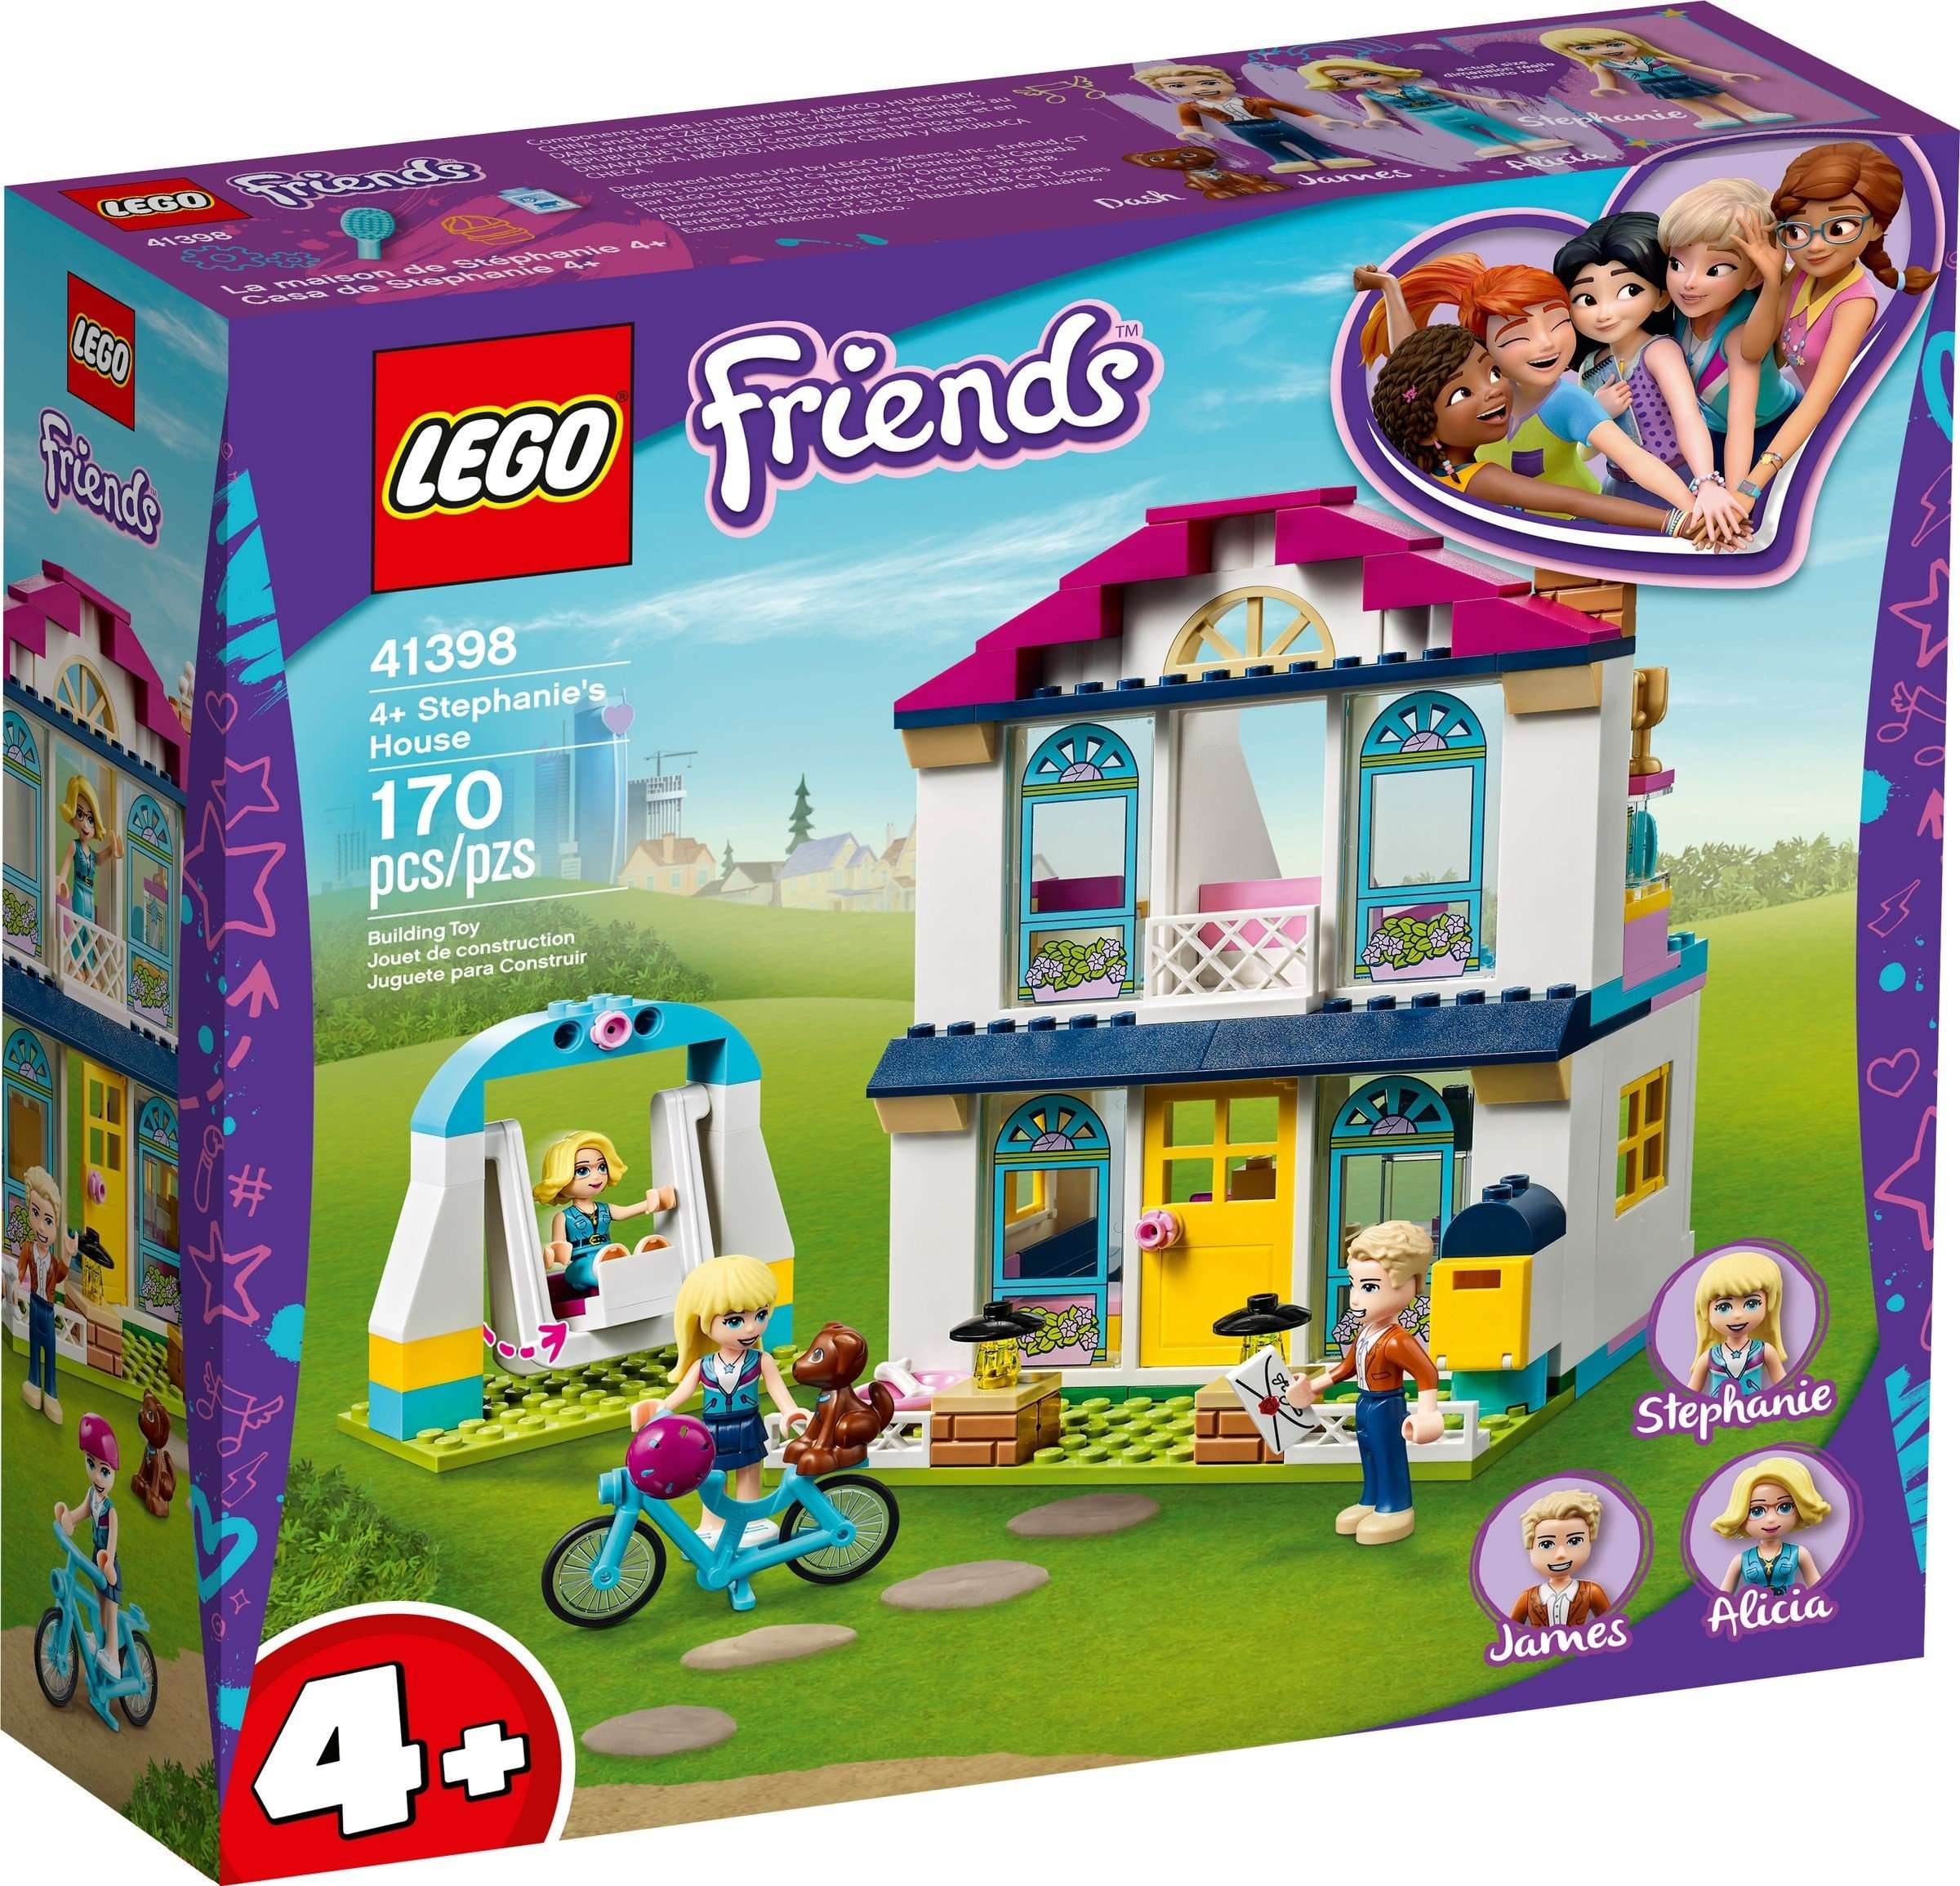 LEGO Friends - 4+ Stephanie